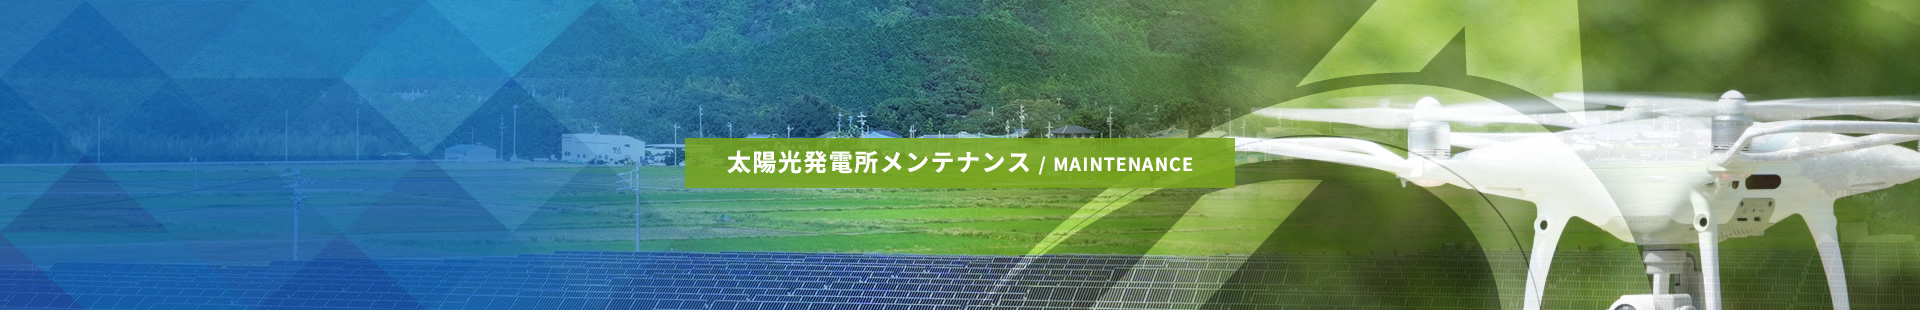 太陽光発電所メンテナンス / MAINTENANCE